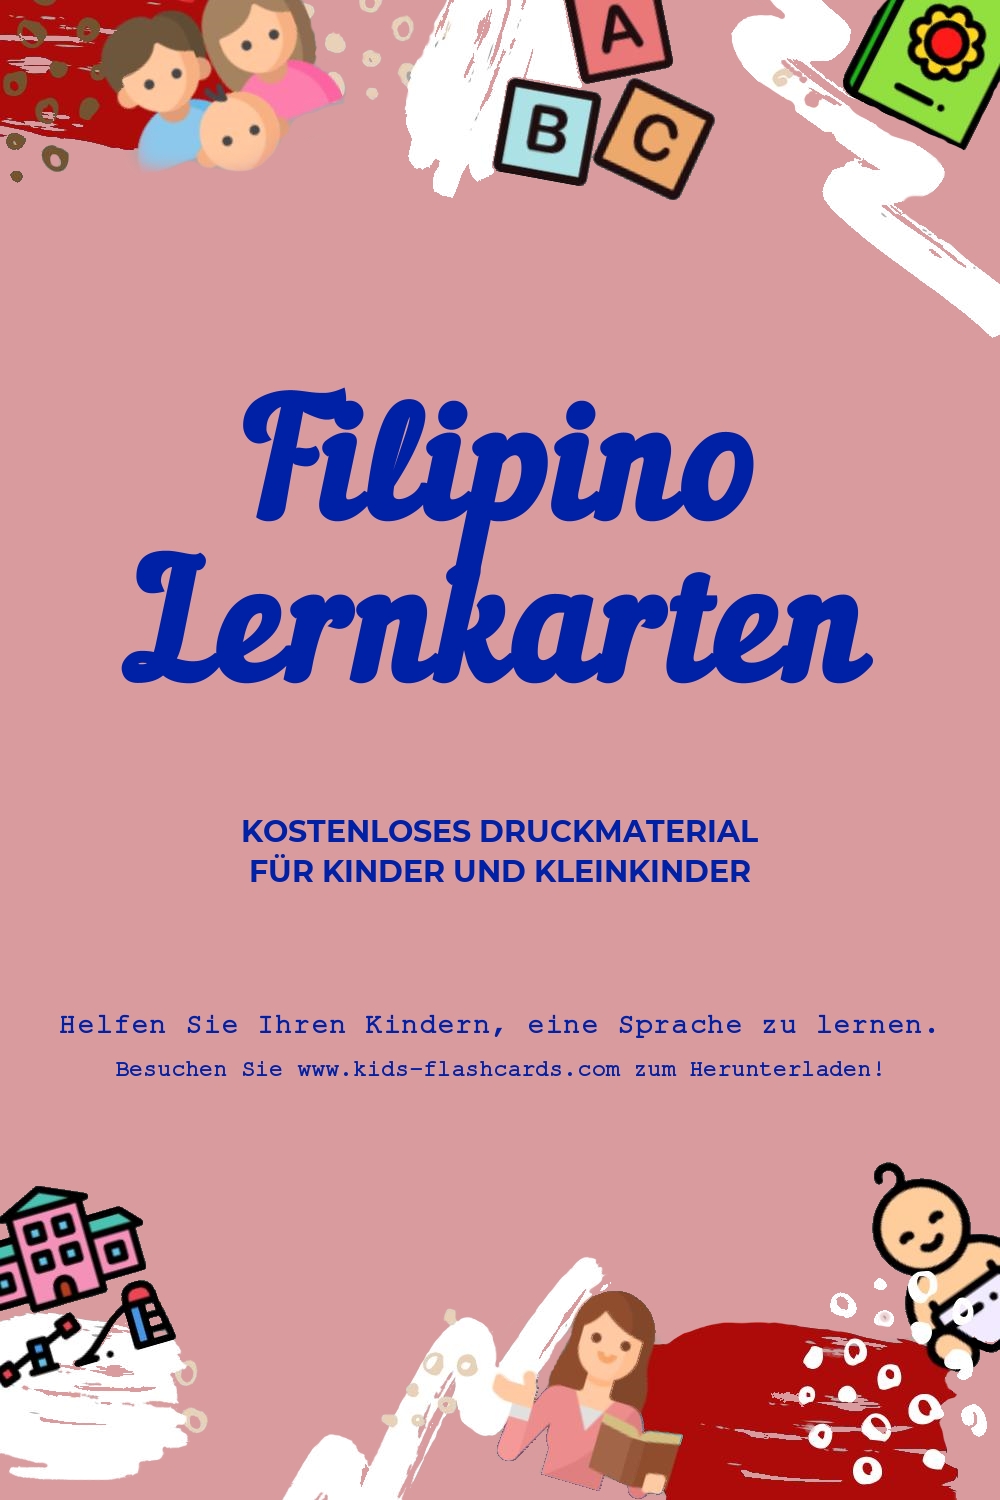 Arbeitsblätter zum Erlernen der Filipinoen Sprache